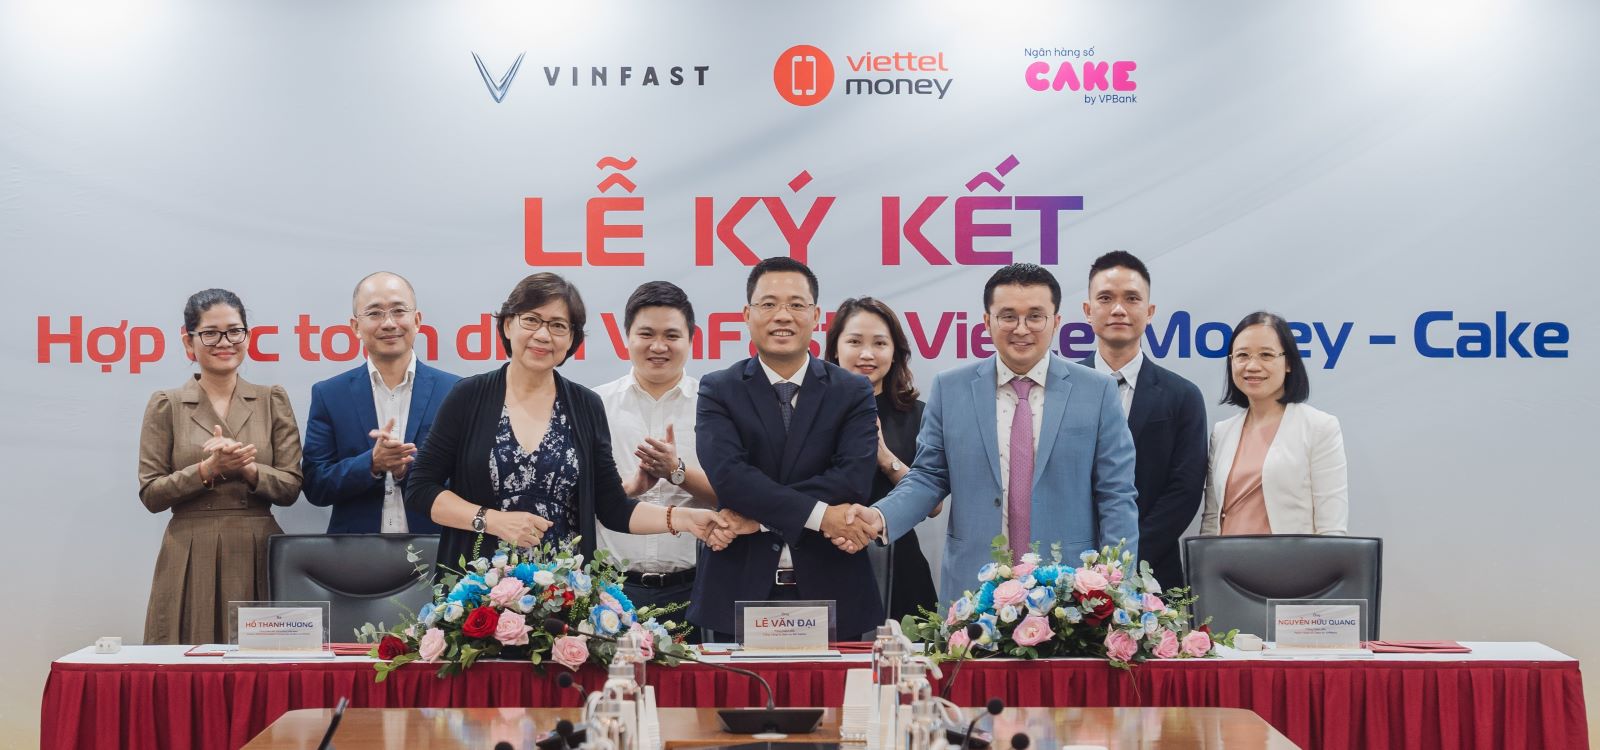 Kinh tế - VinFast hợp tác chiến lược với Cake by VPBank và Viettel Money, hỗ trợ khách hàng mua xe máy điện trả góp với giá ưu đãi (Hình 2).